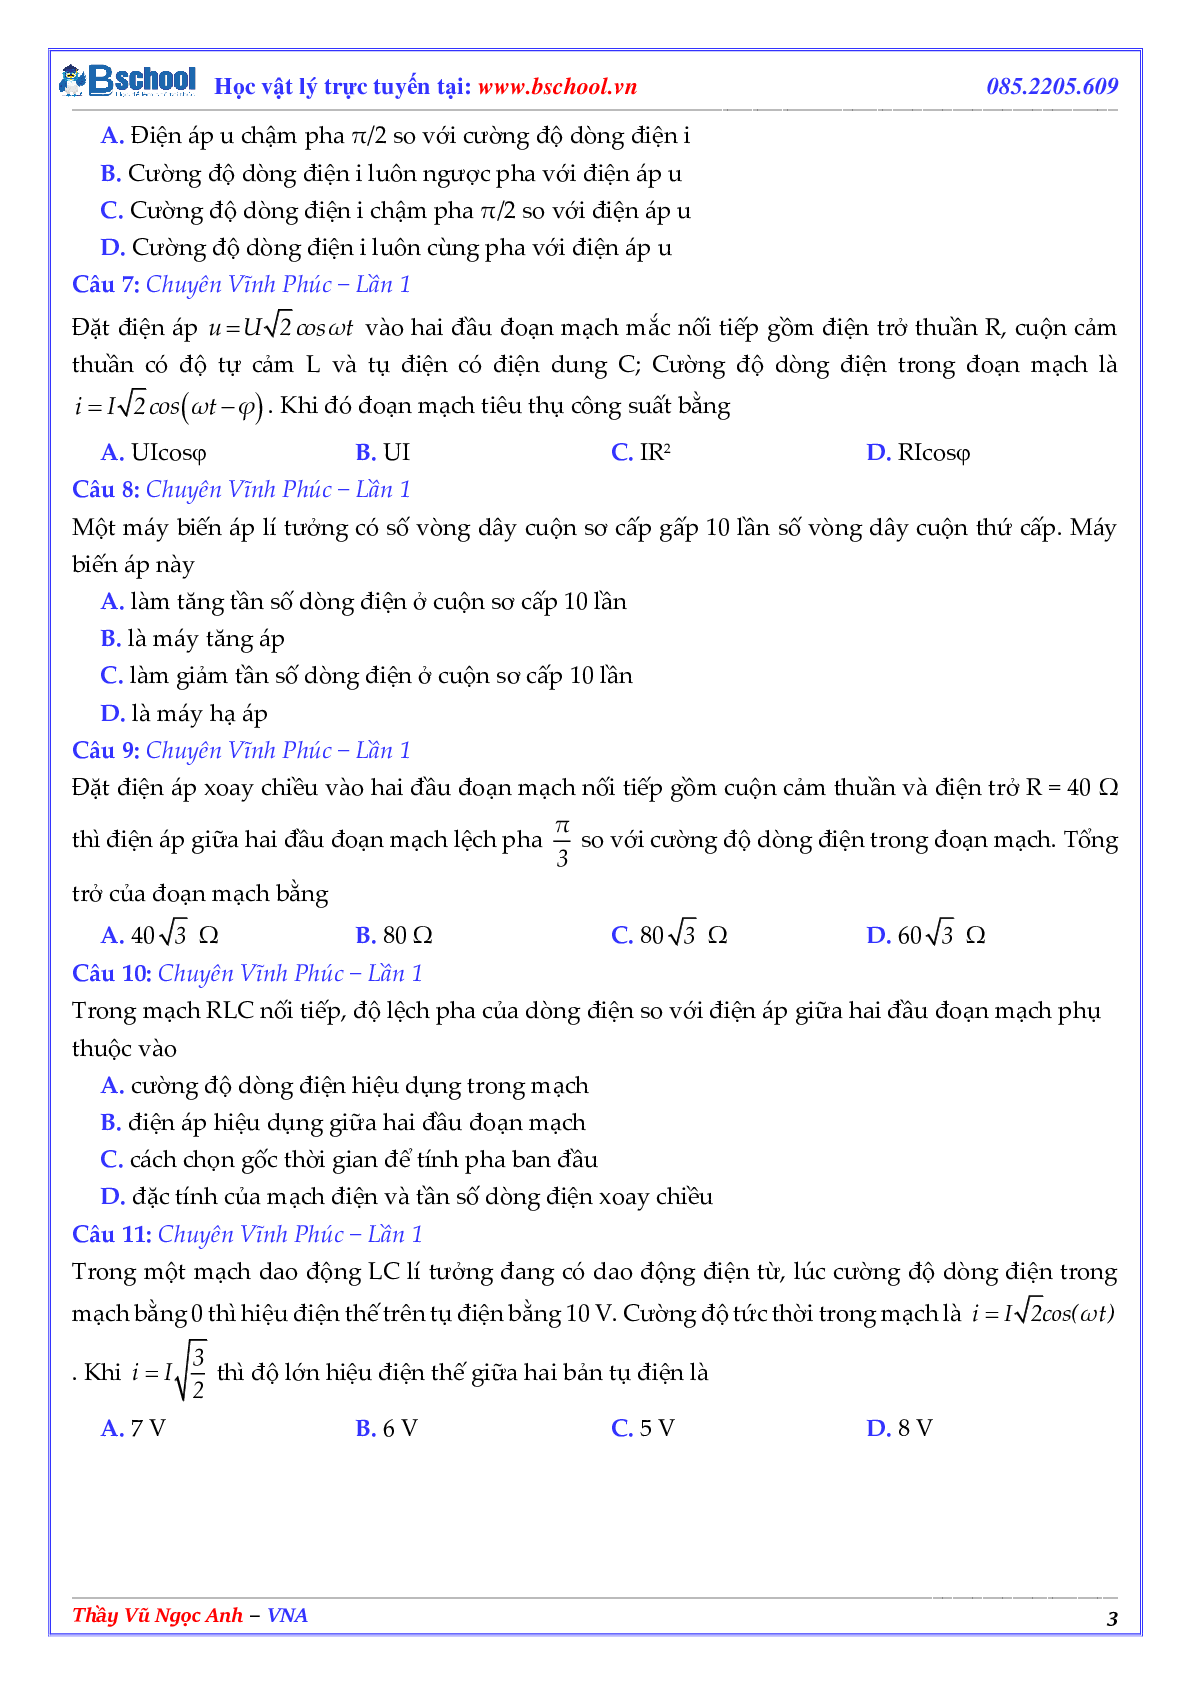 Tuyển Tập Các Câu Hỏi Điện Xoay Chiều Trong Các Đề Thi THPT QG Phần 1 (trang 3)